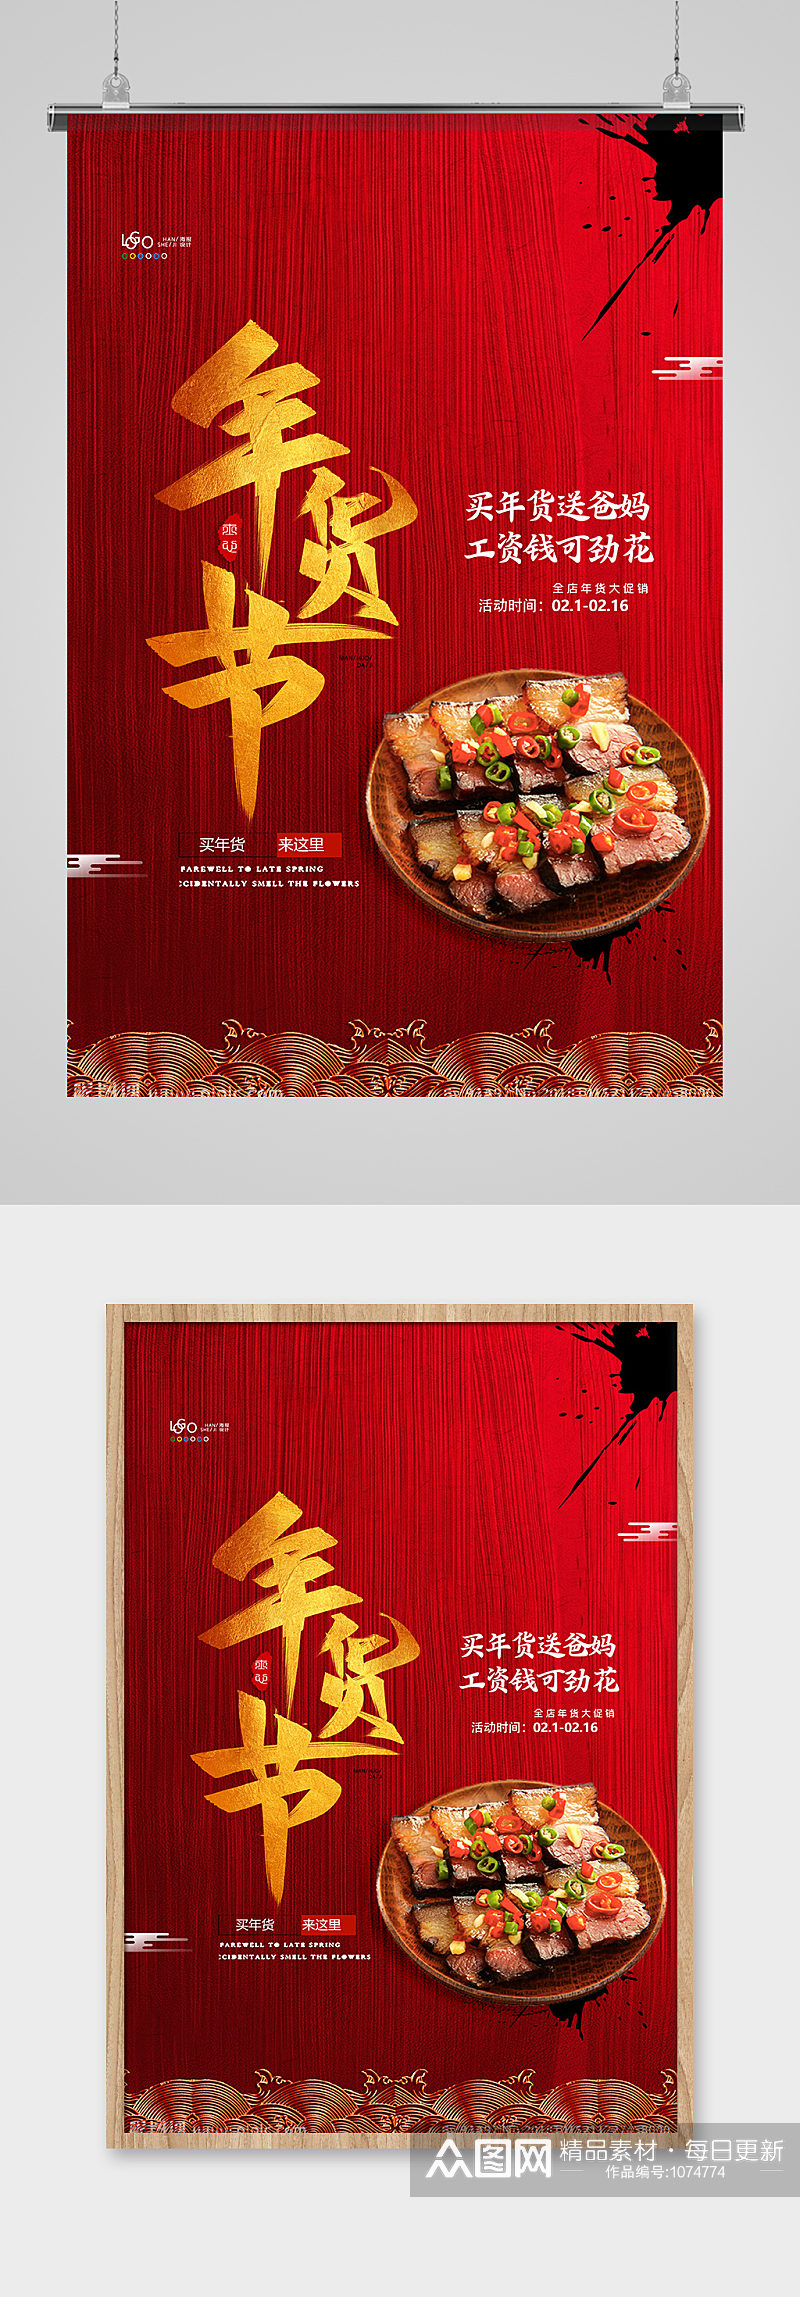 红色大气年货肉类促销年货节海报设计素材